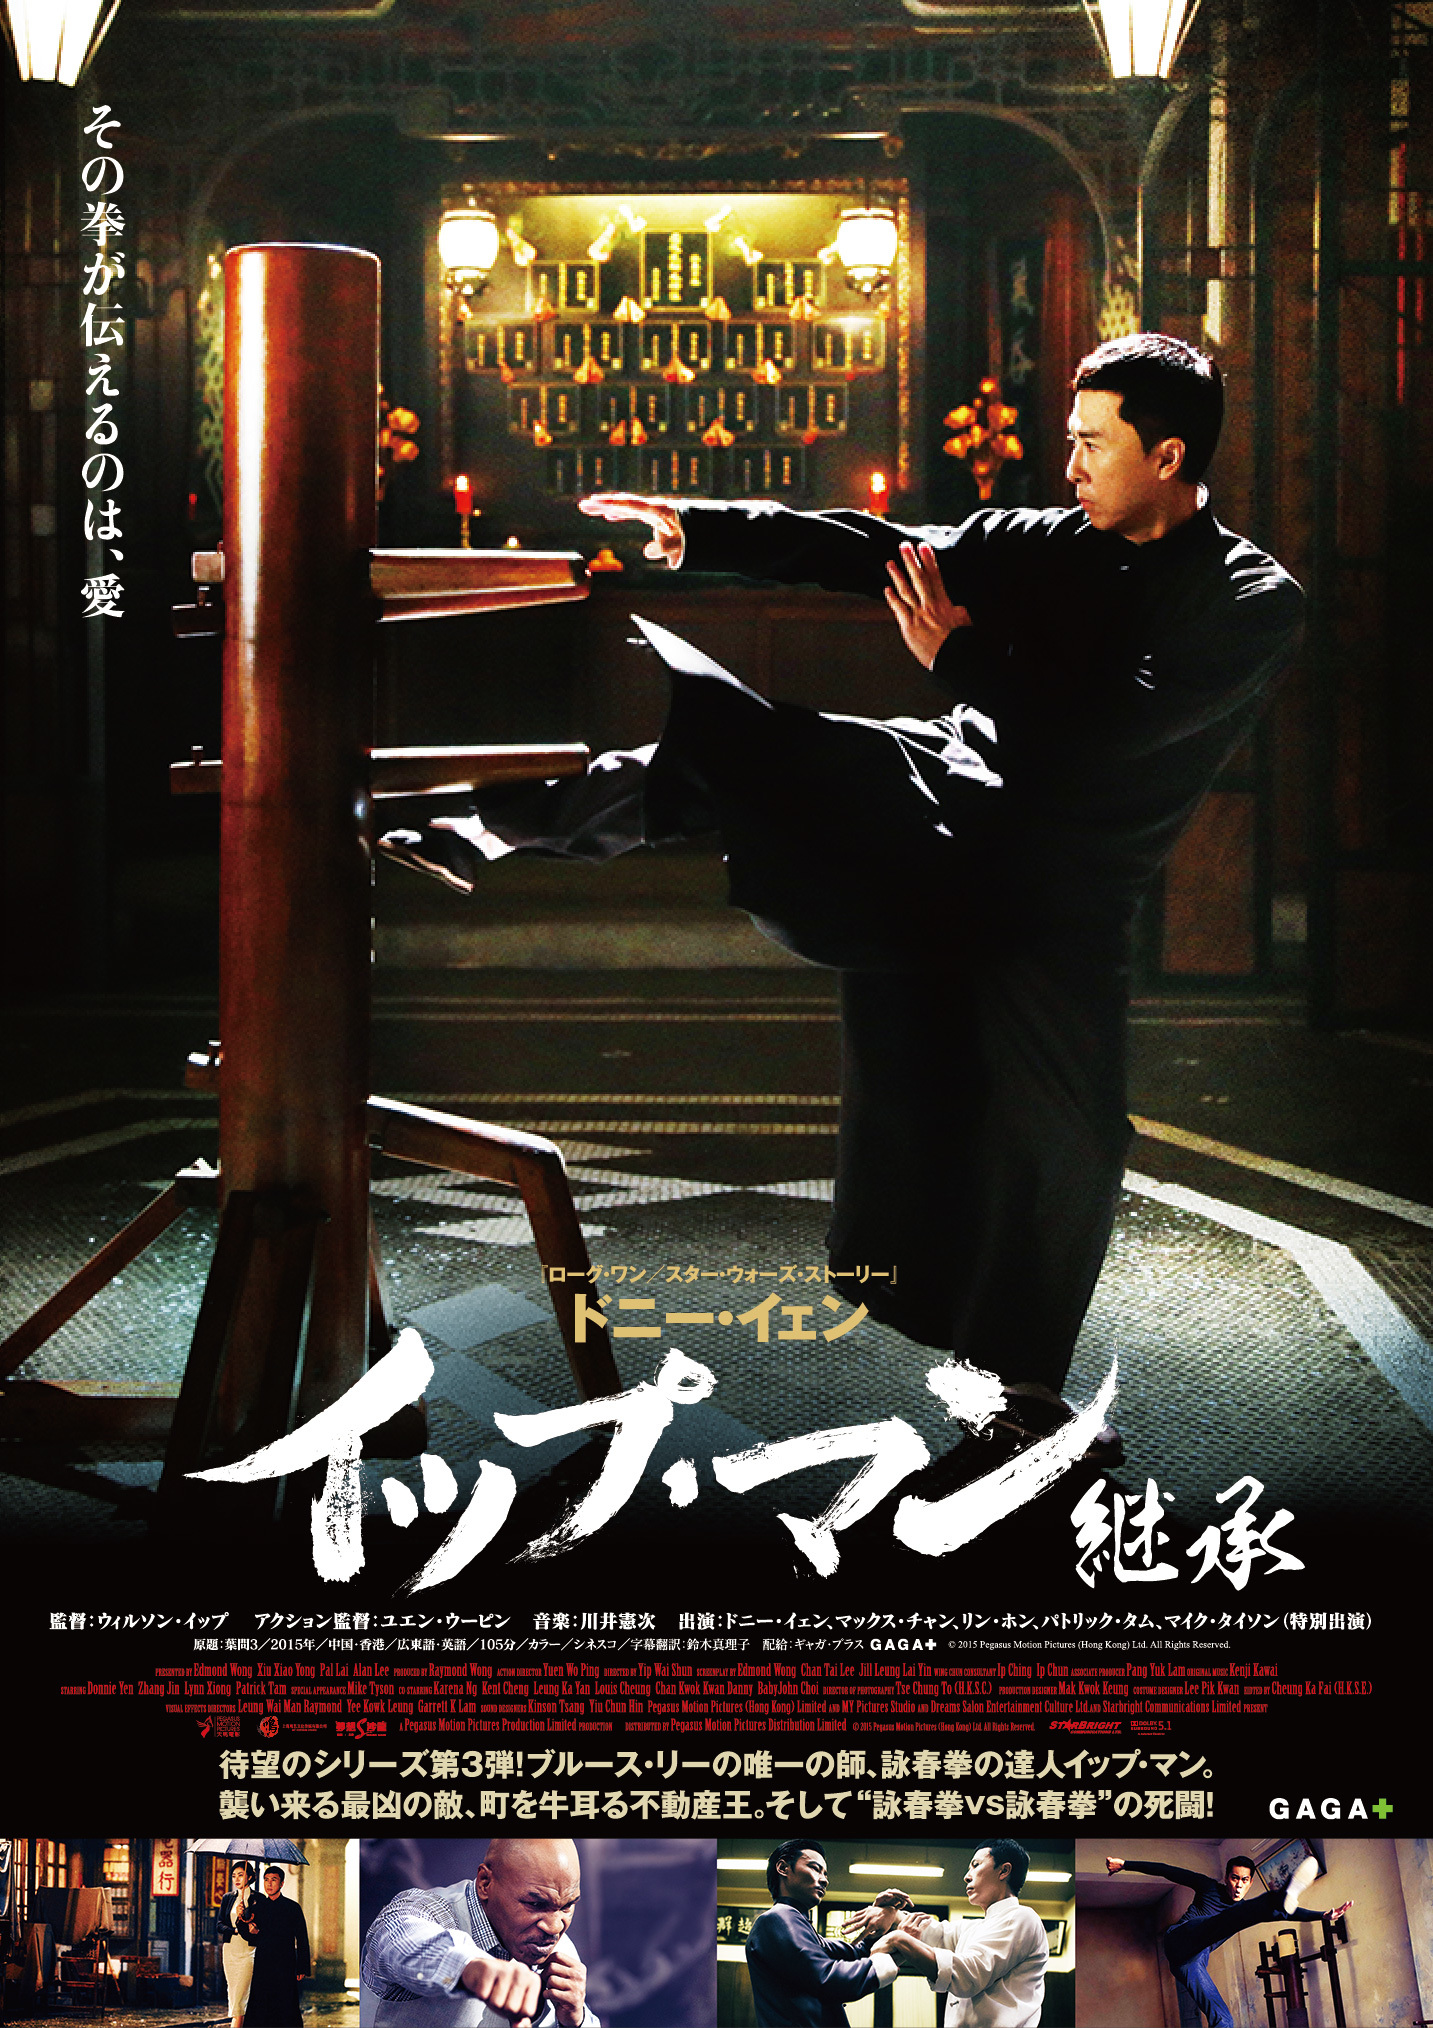 『イップ・マン 継承』日本オリジナルポスター (c)2015 Pegasus Motion Pictures (Hong Kong) Ltd. All Rights Reserved.